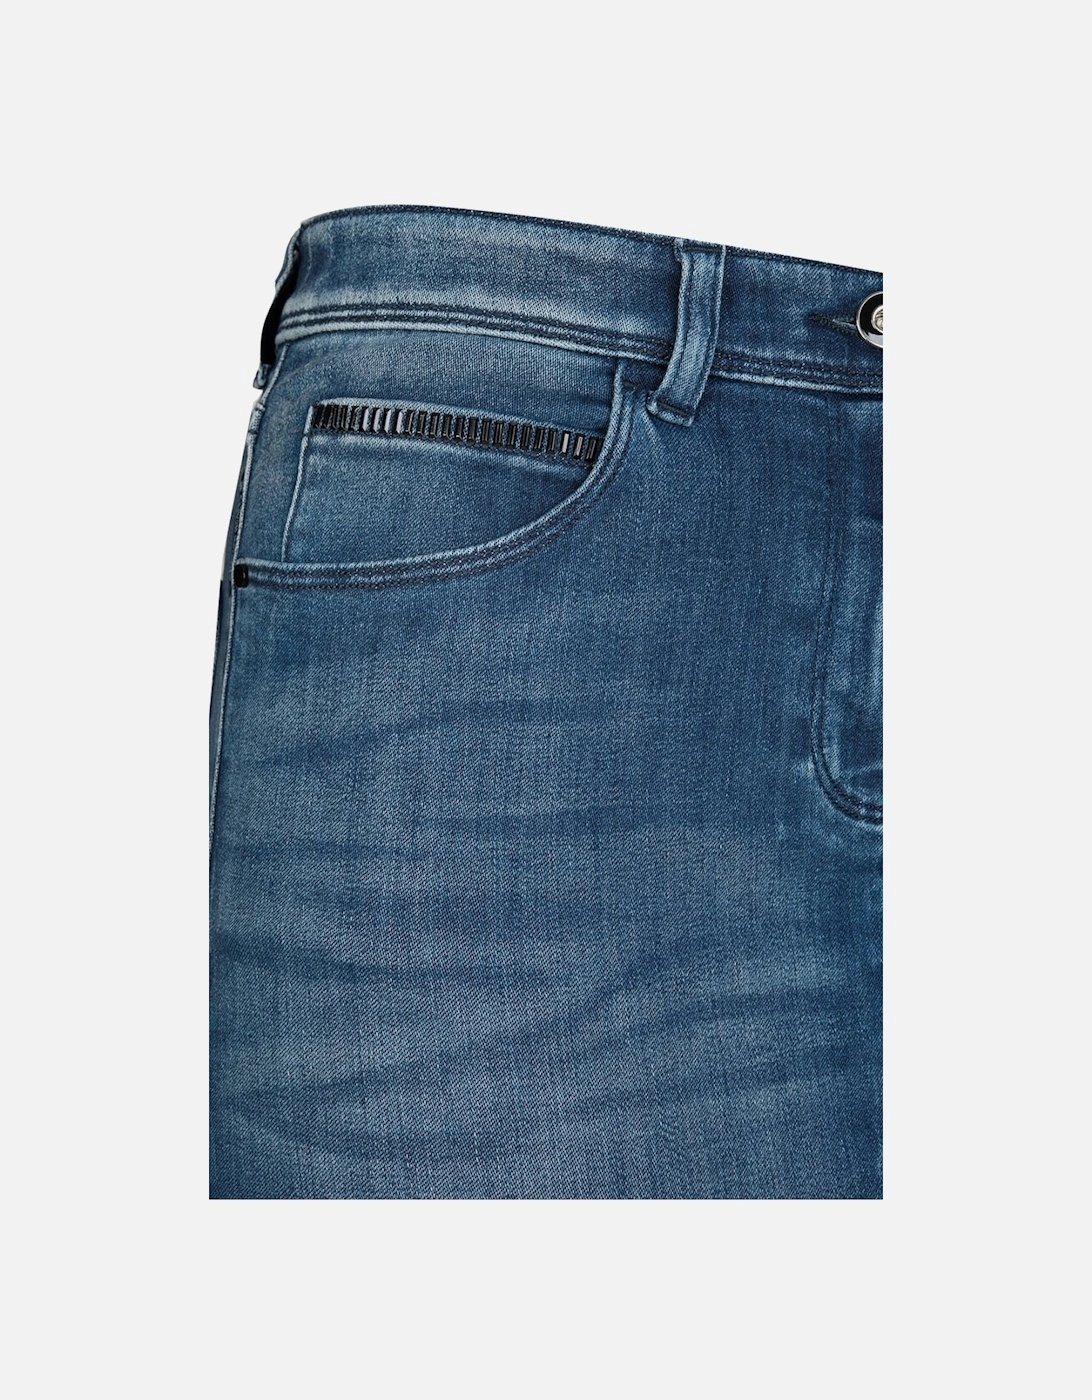 Jeans Women's Denim Midi Skirt Blue